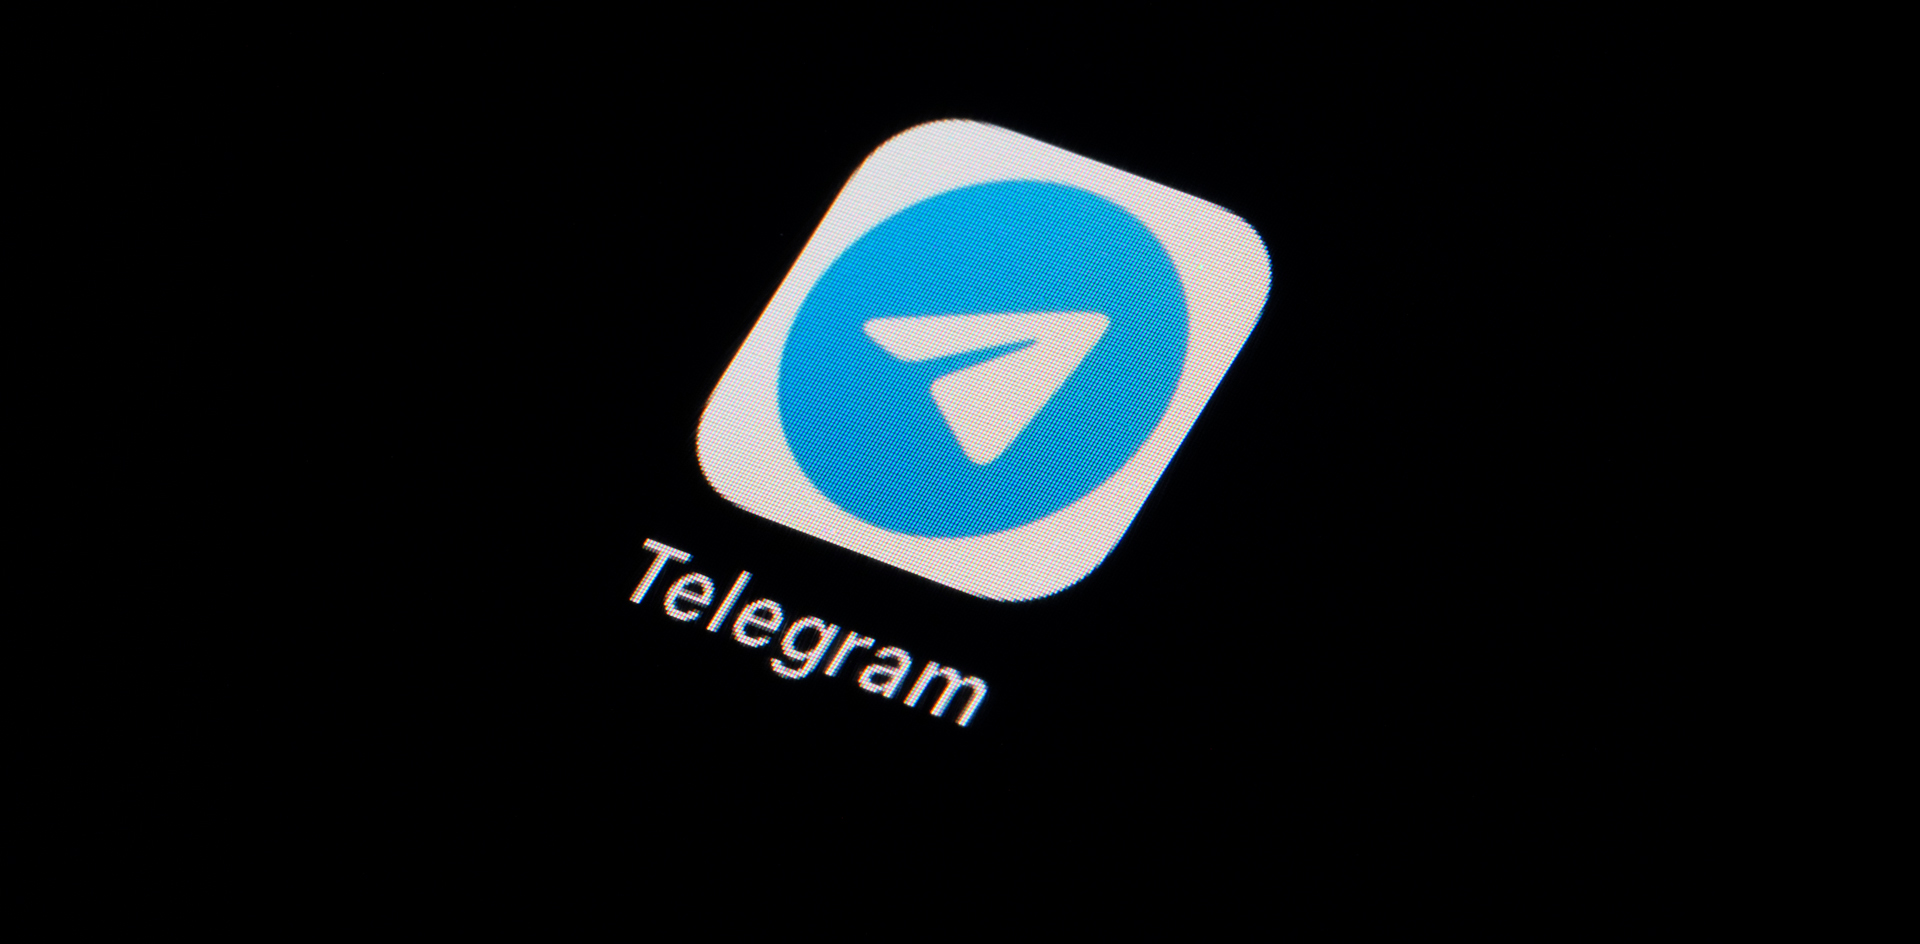 Политический Telegram в России оказался на пороге новой войны